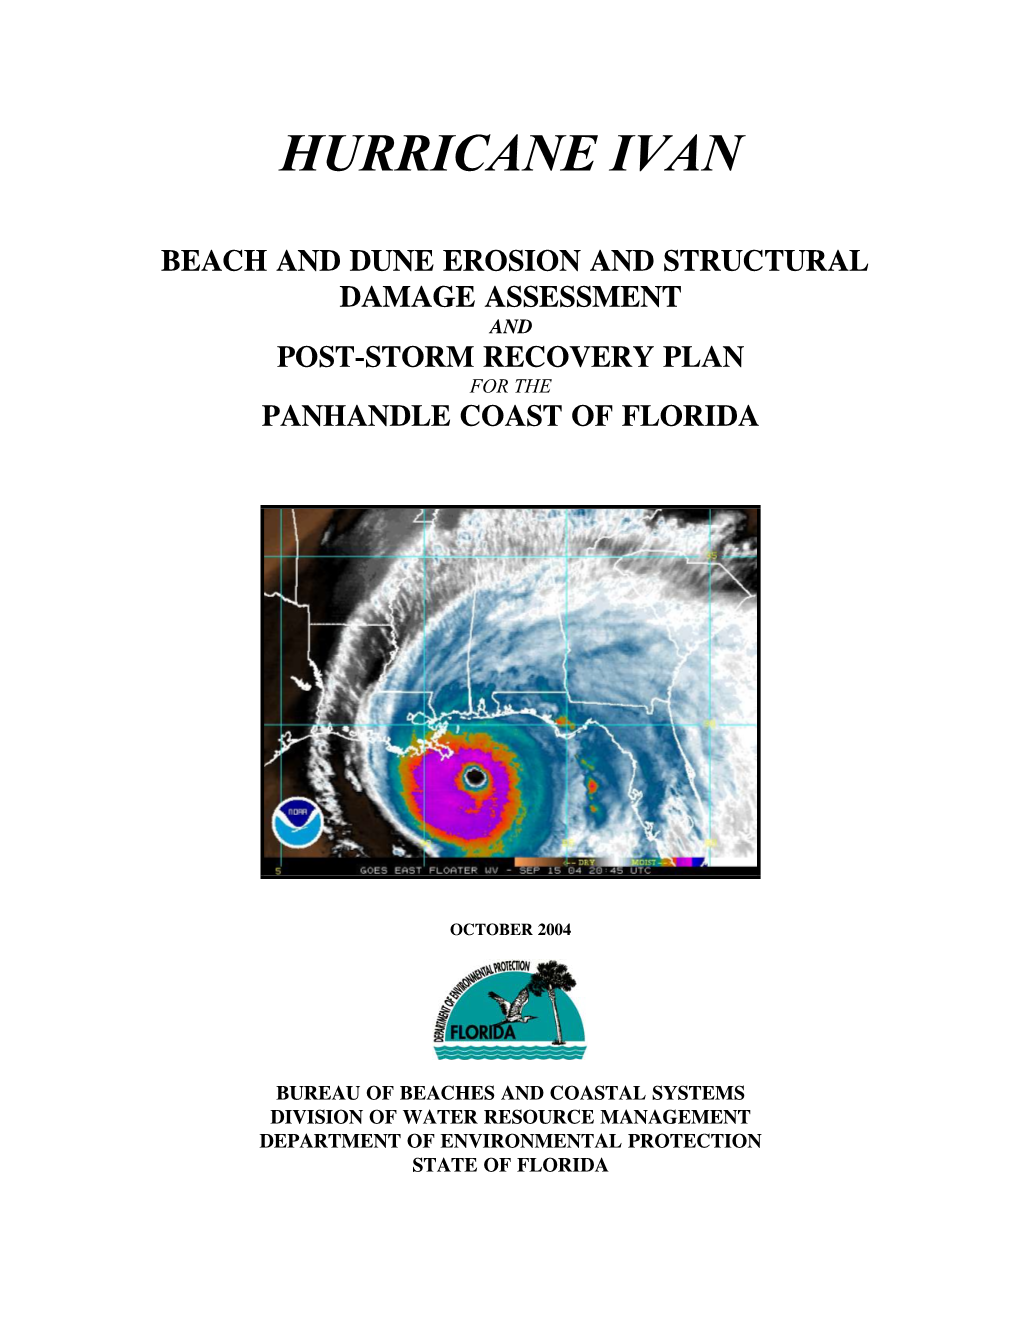 Hurricane Ivan Report